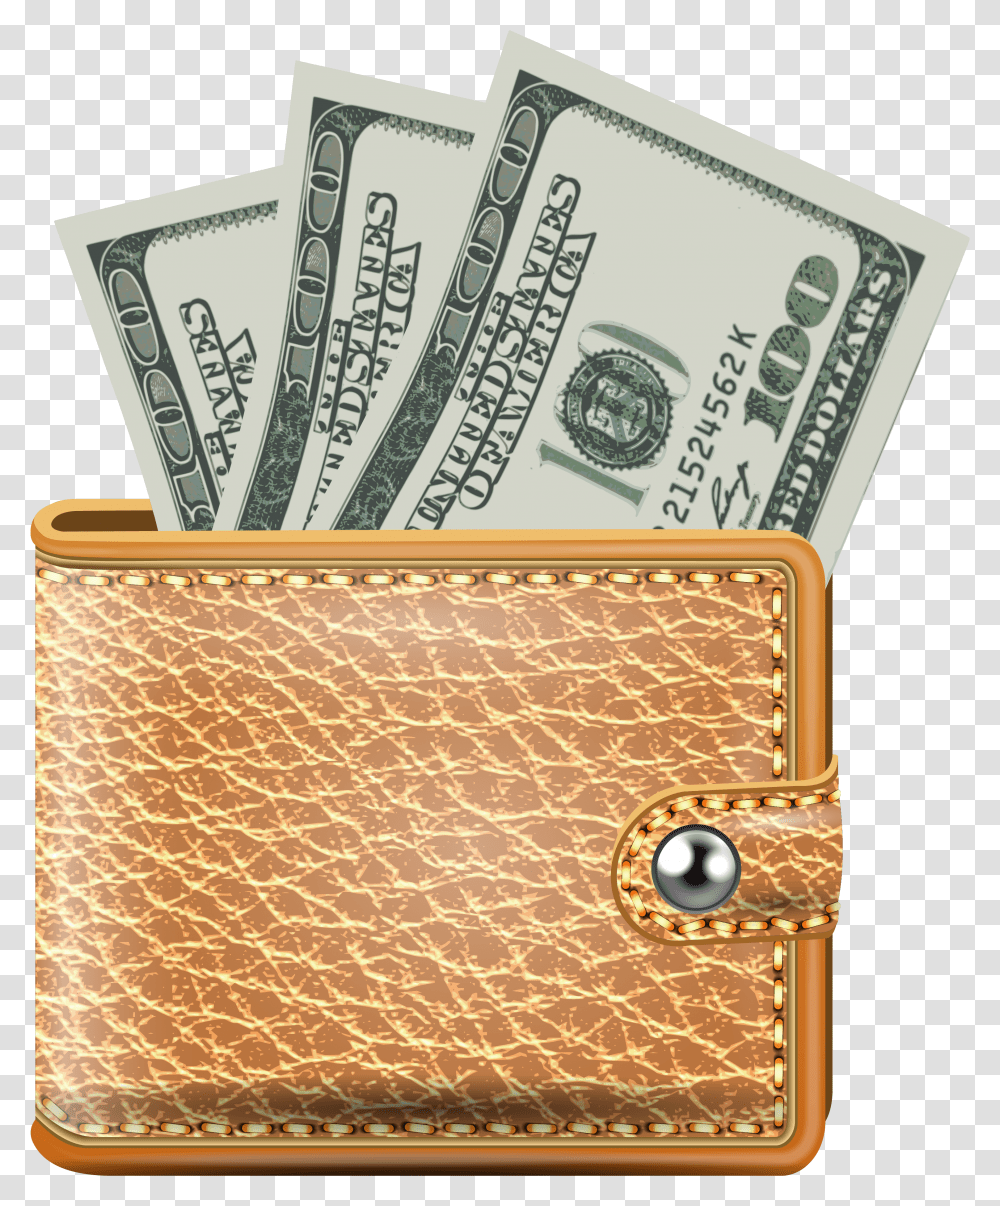 Carteira De Dinheiro Download Wallet With Money, Accessories, Accessory, Purse, Handbag Transparent Png